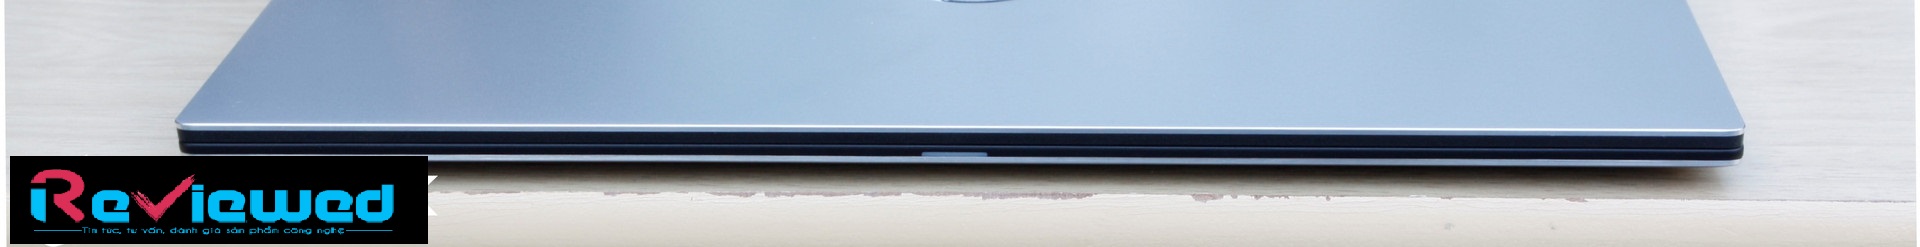 Đánh giá laptop 2 trong 1 Dell XPS 13 9365: Màn hình đẹp tràn cạnh, Chuyên trang tư vấn laptop